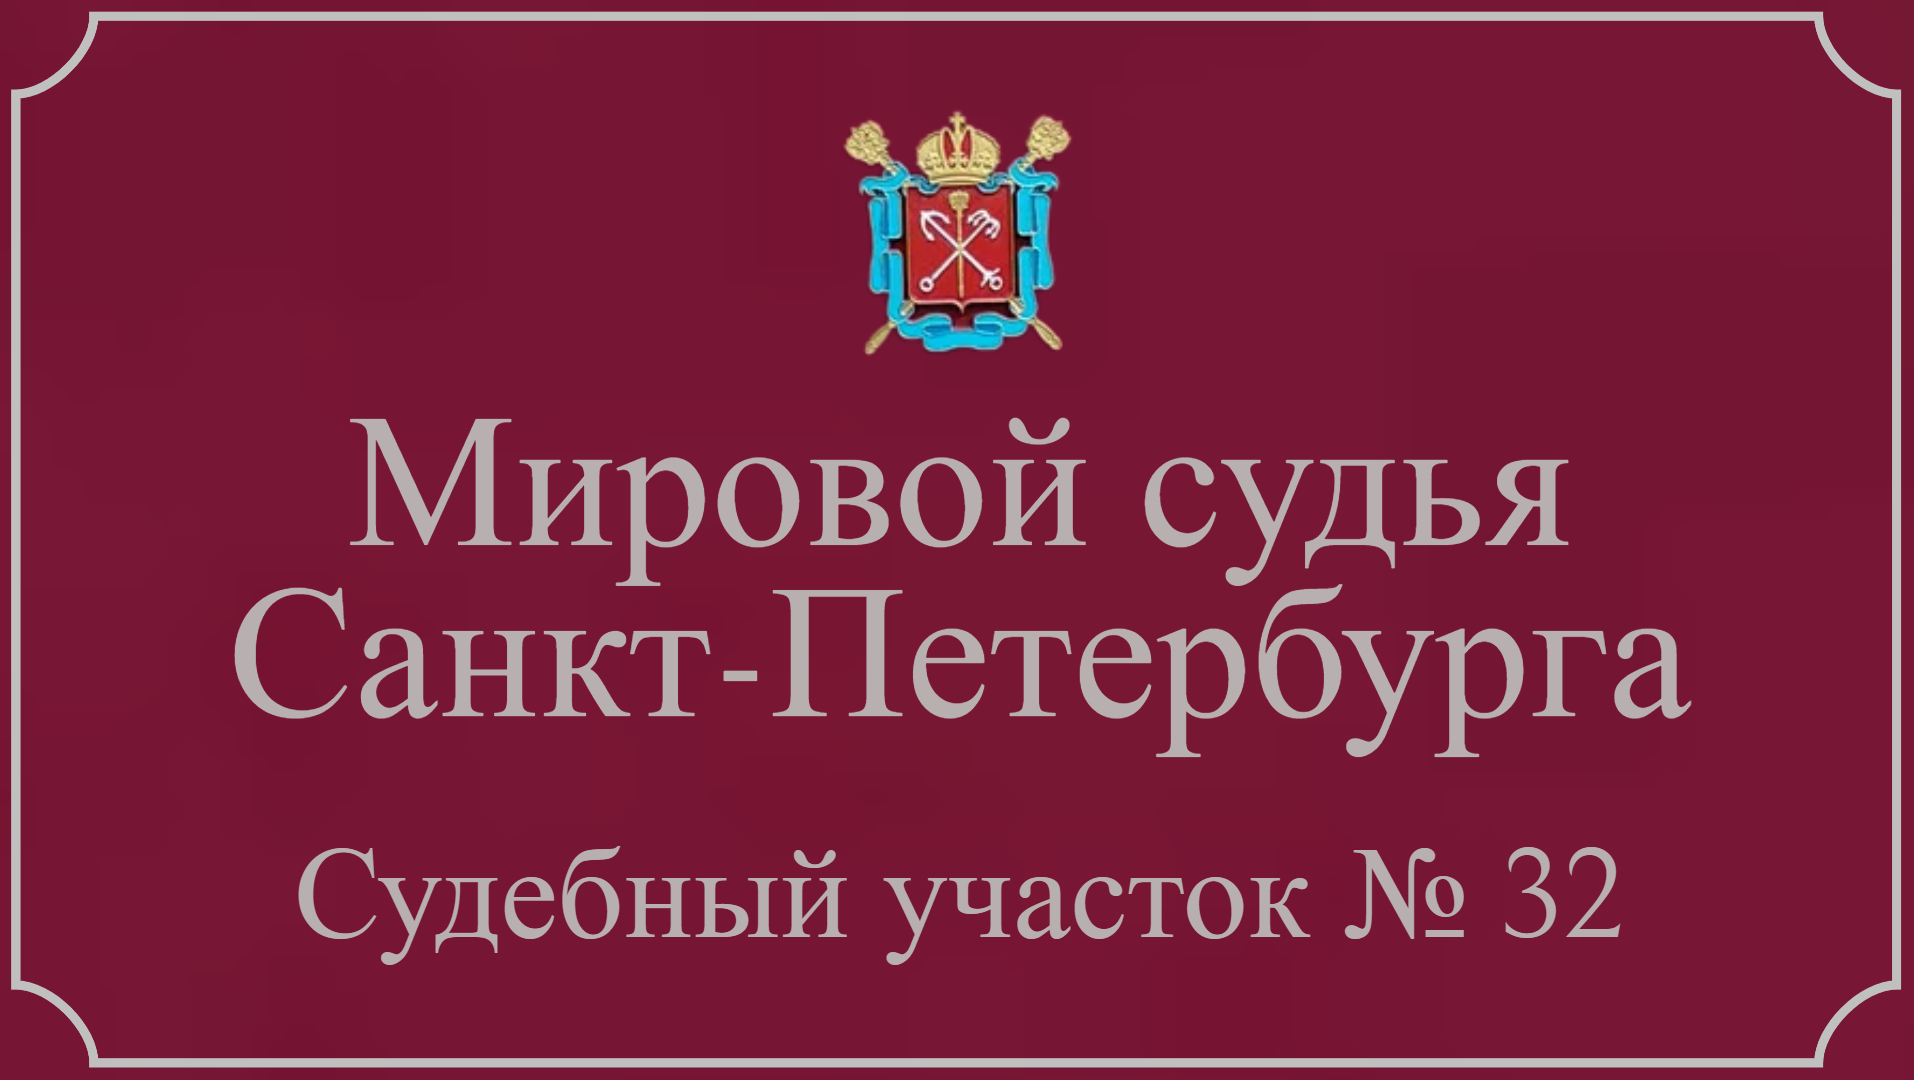 Информация по 32 судебному участку в Санкт-Петербурге.